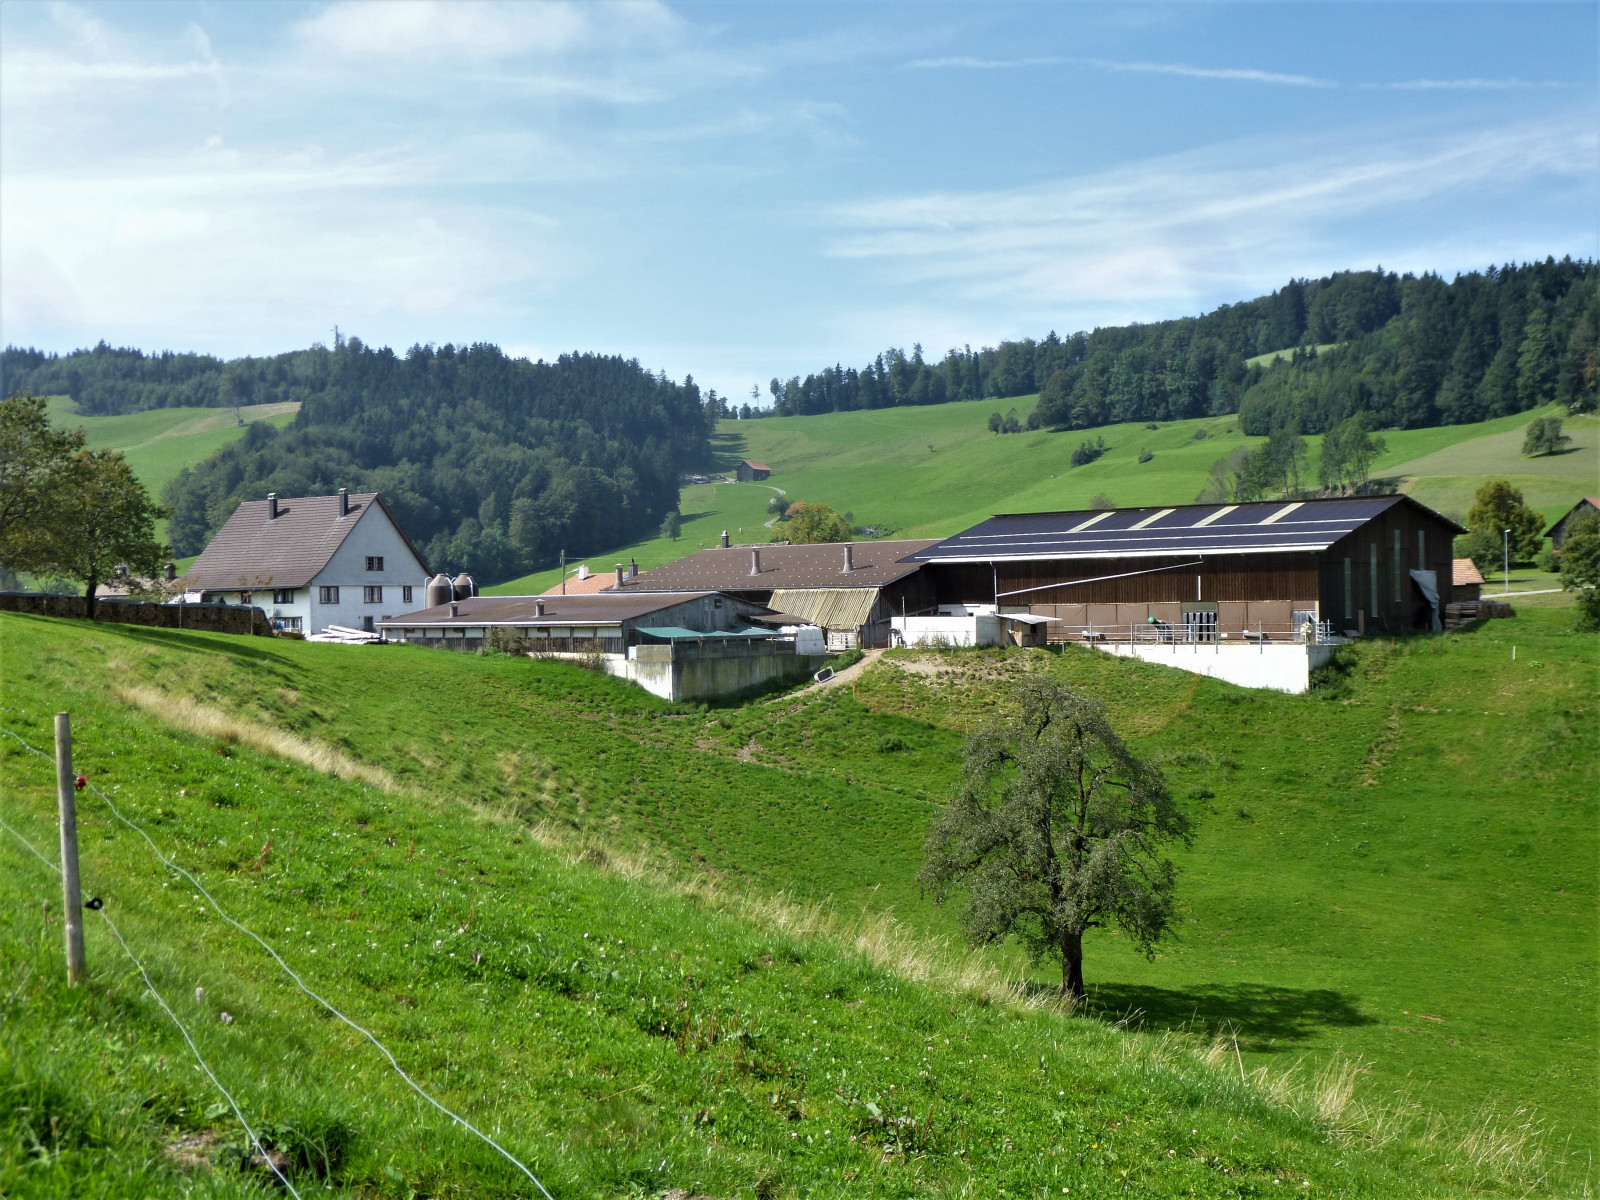 Chlibäretswil, Dorf und Häuser, Hof Brunner von südosten her gesehen